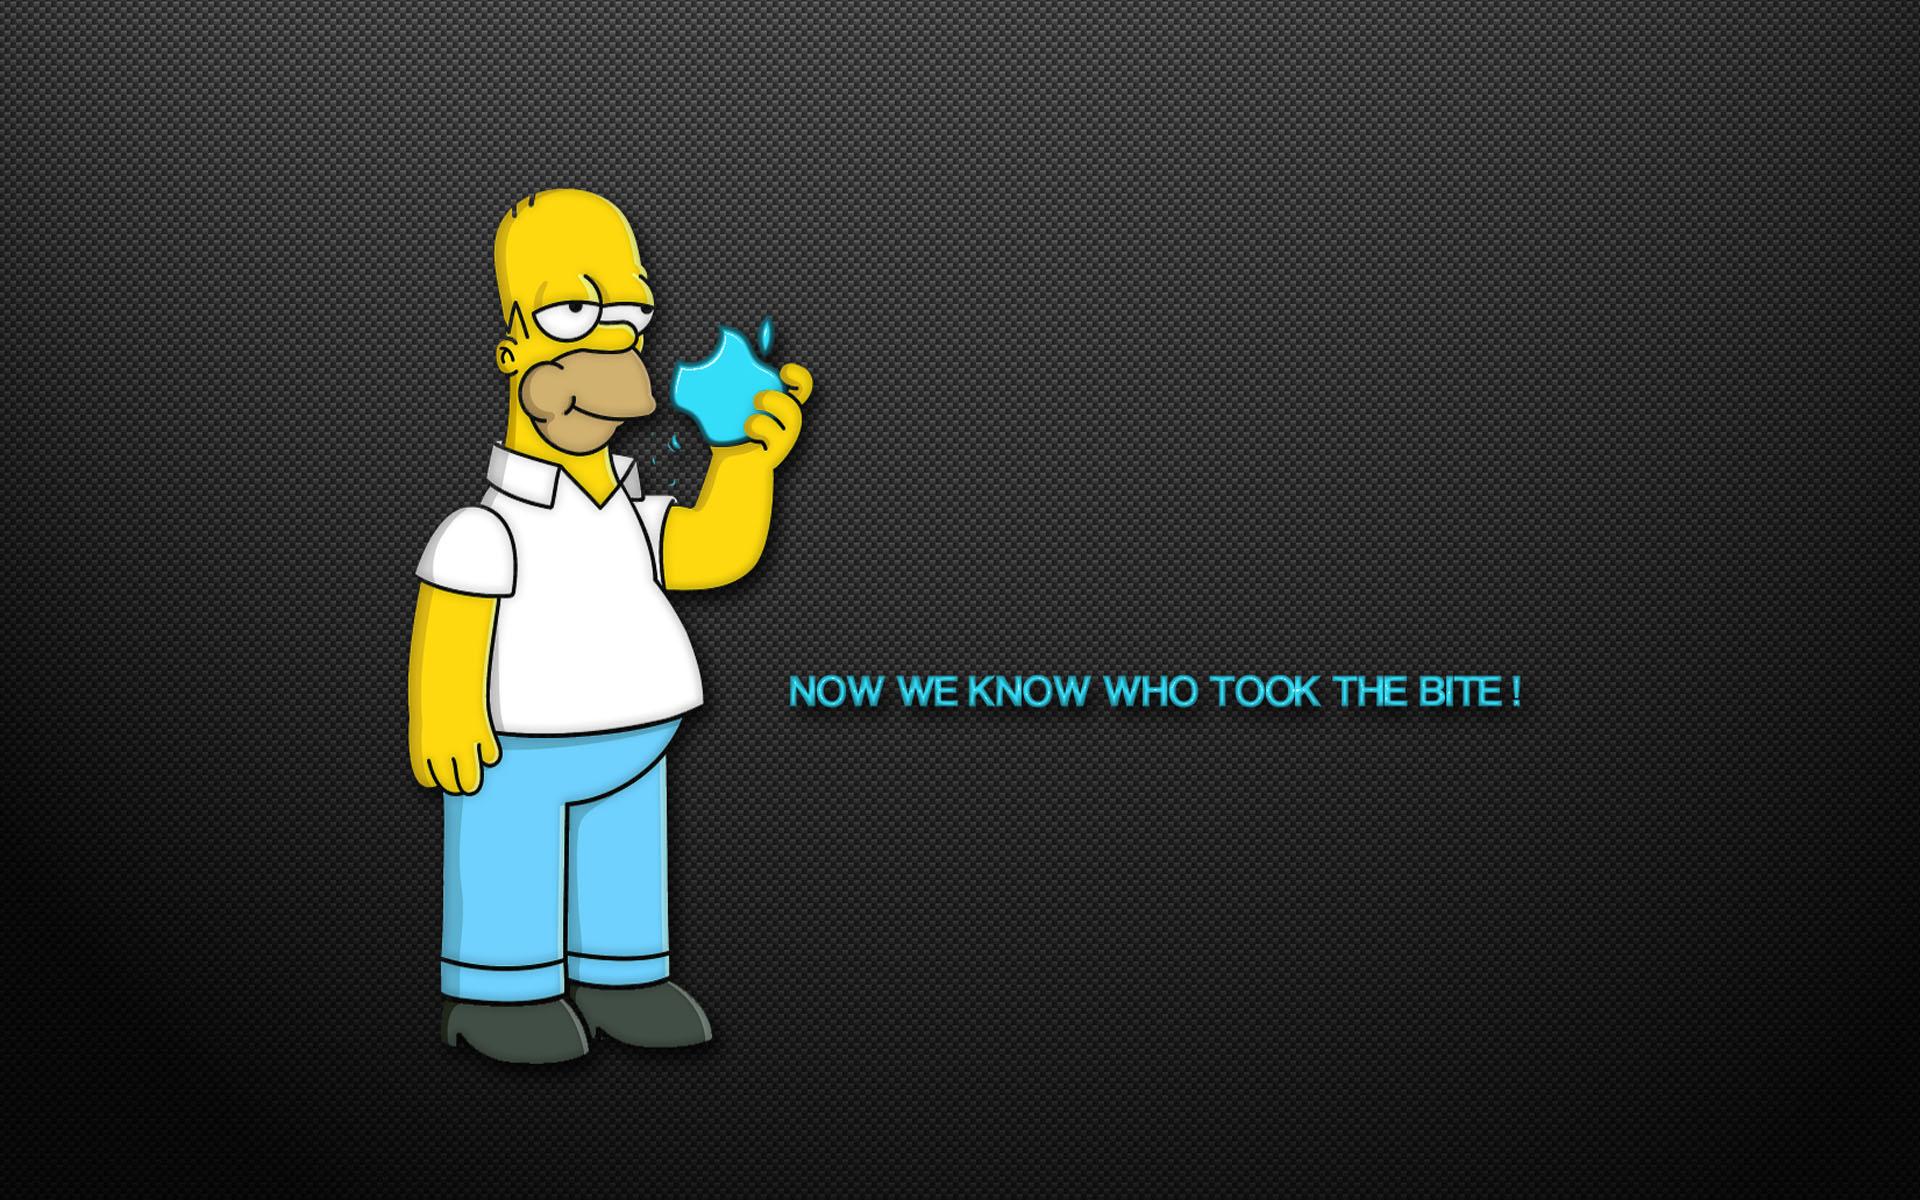 Simpsons Desktop Wallpaper